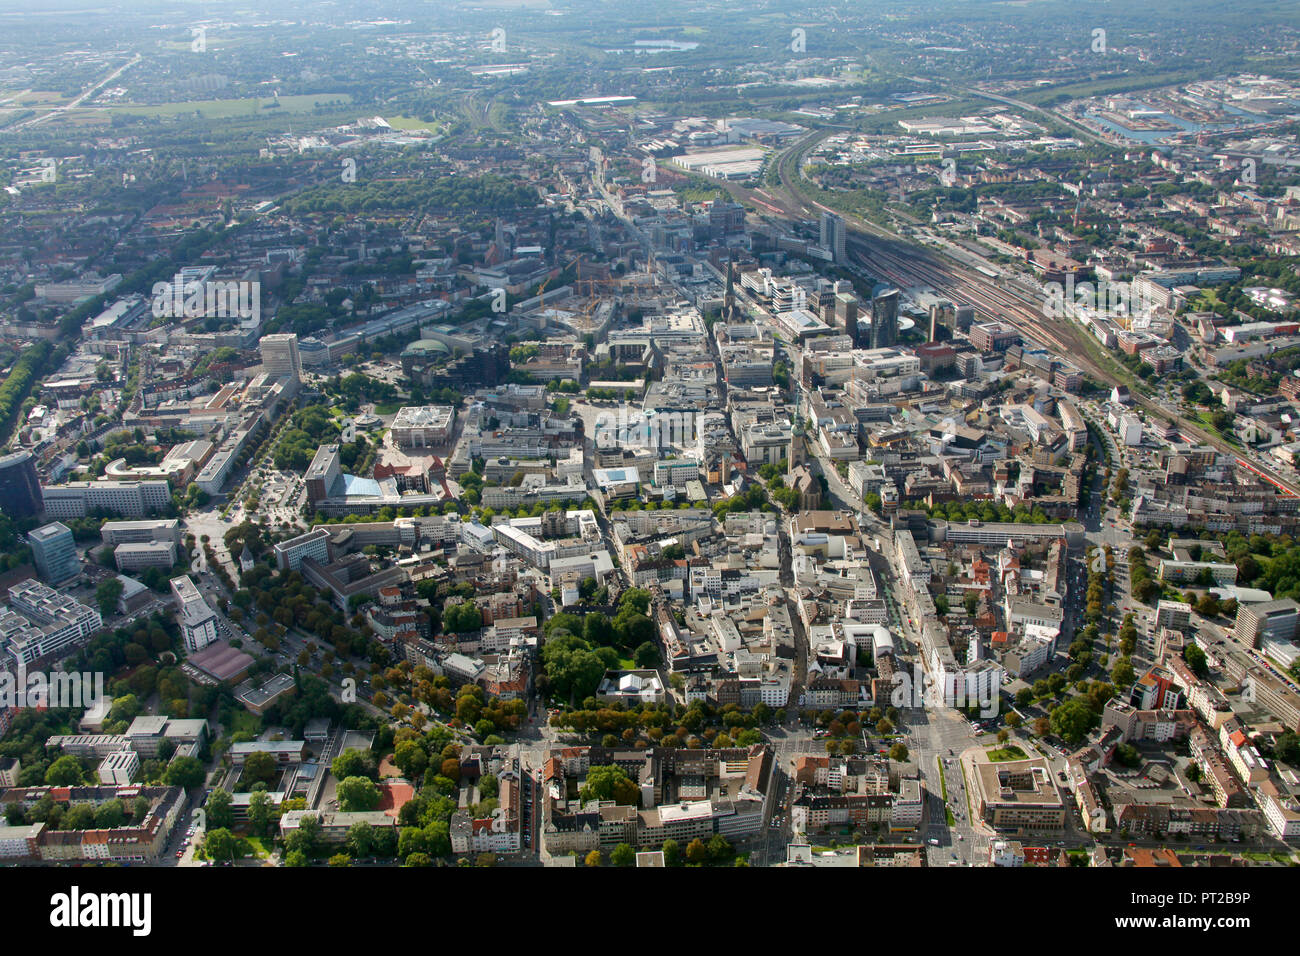 Vista aerea, Dortmund, la zona della Ruhr, Renania settentrionale-Vestfalia, Germania, Europa Foto Stock